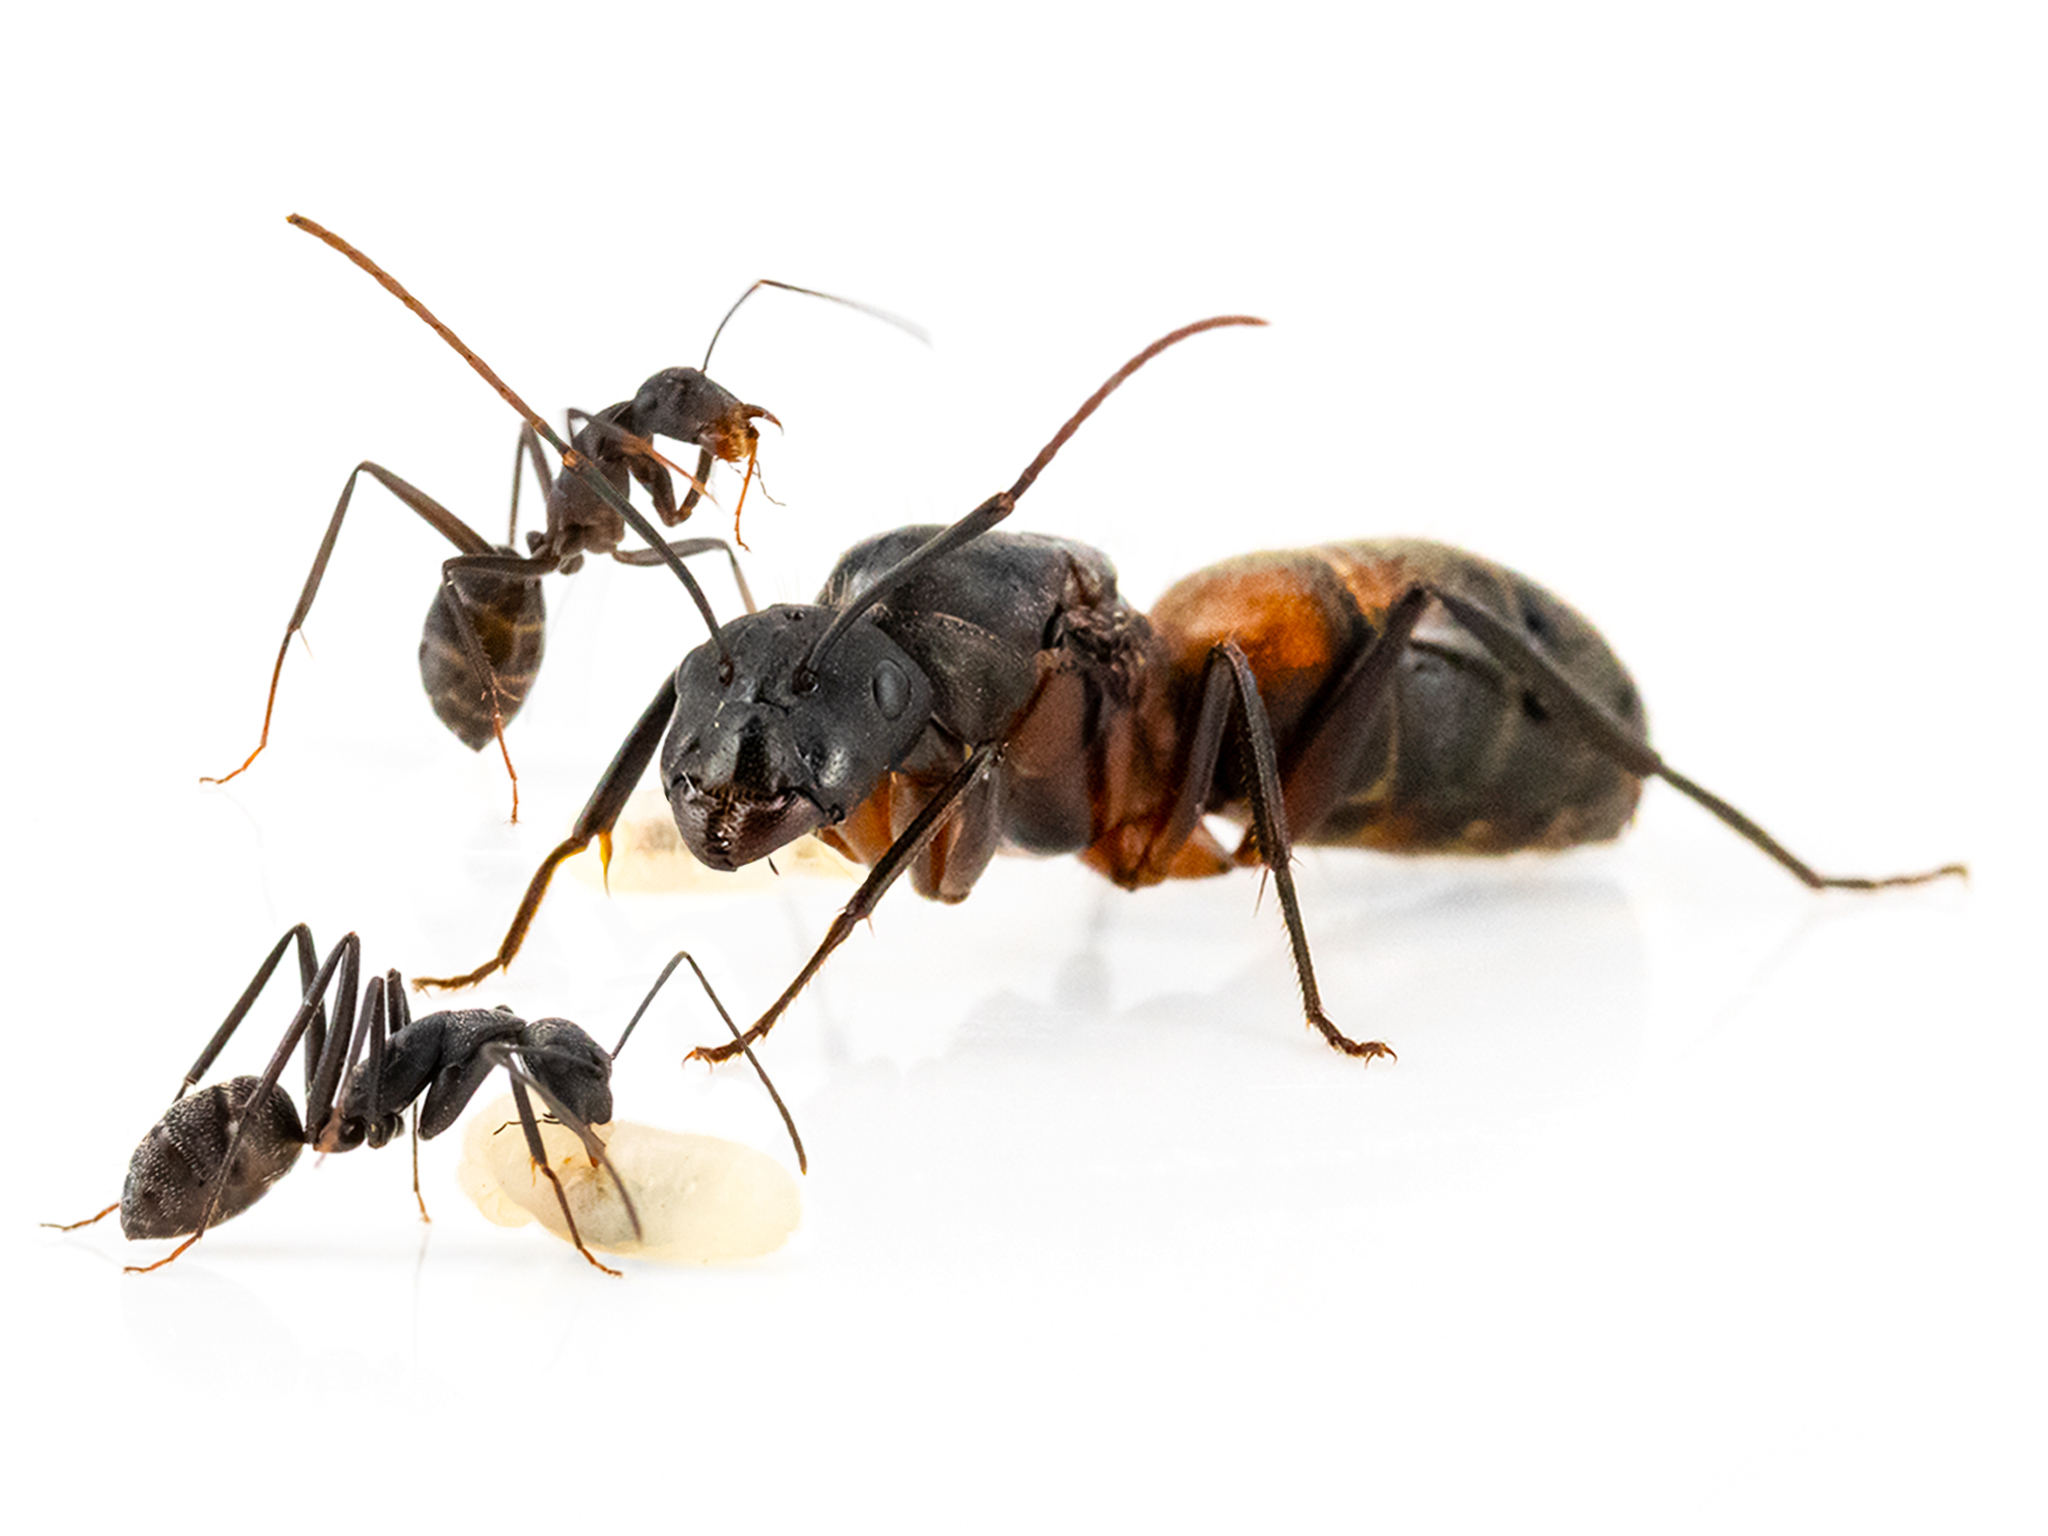 ANTSTORE - Ameisenshop - Ameisen kaufen - Camponotus cruentatus